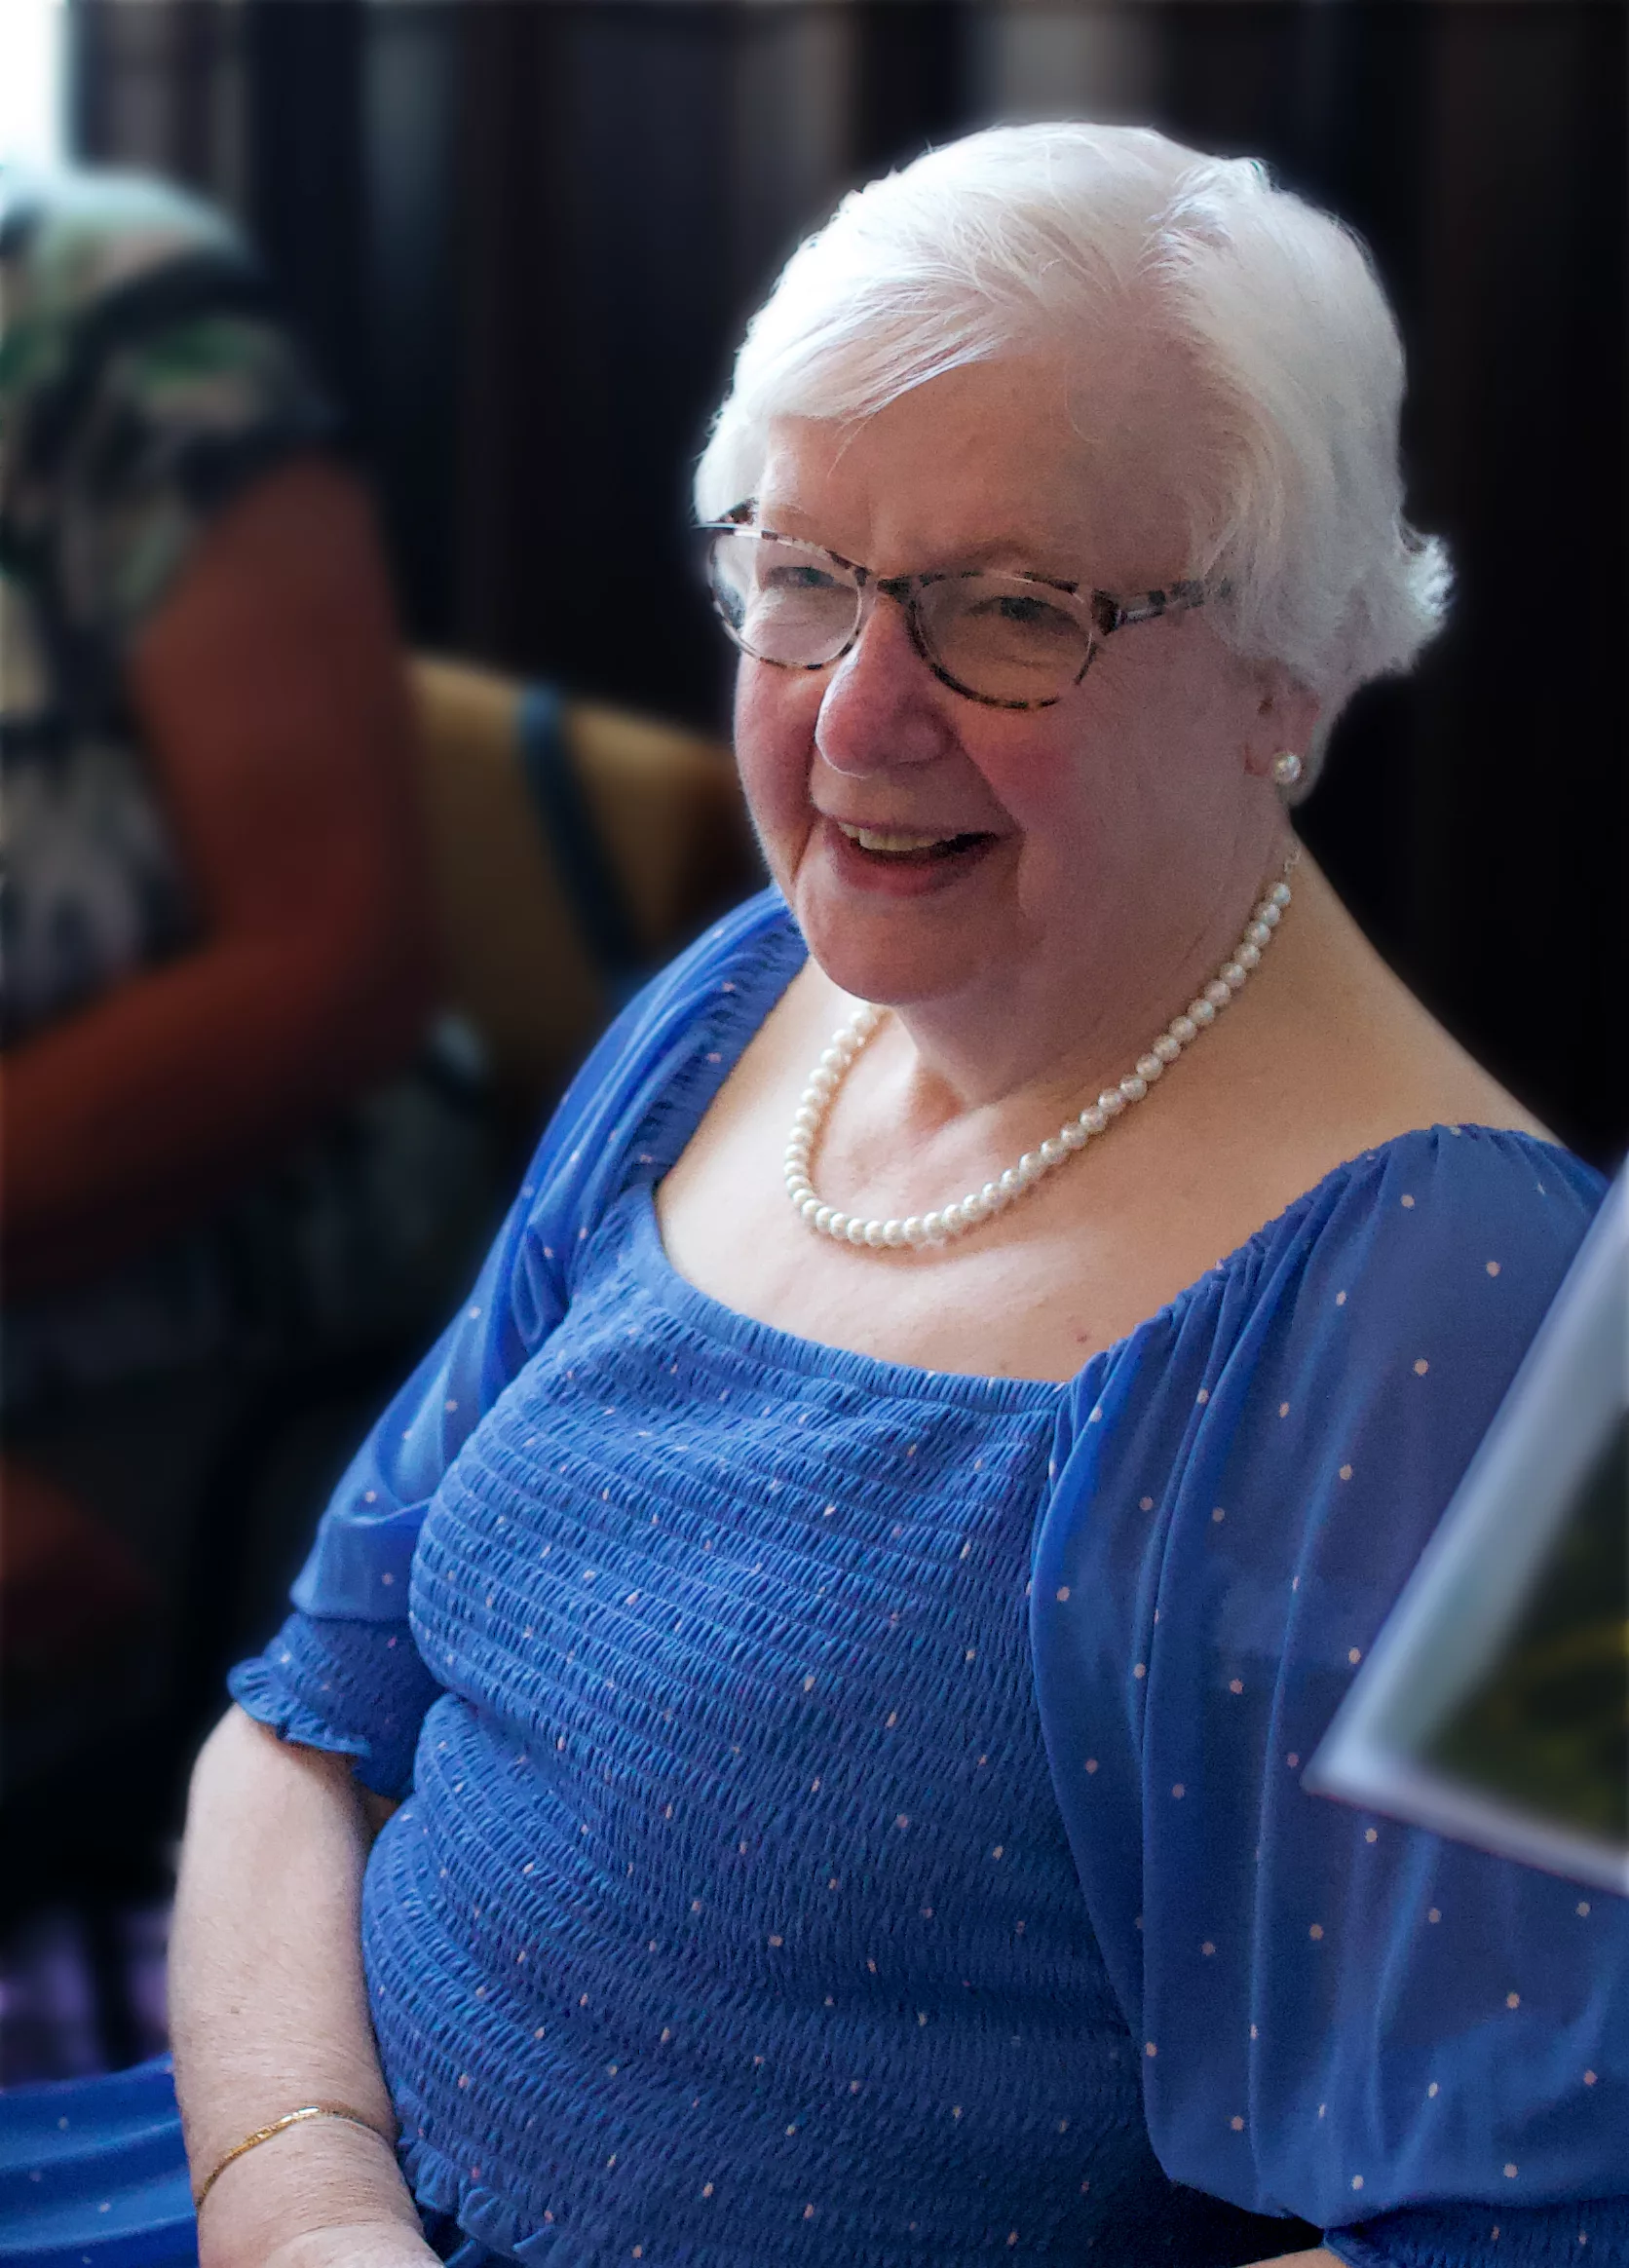 Oudere vrouw met wit haar en een blauwe jurk zit glimlachend te kijken